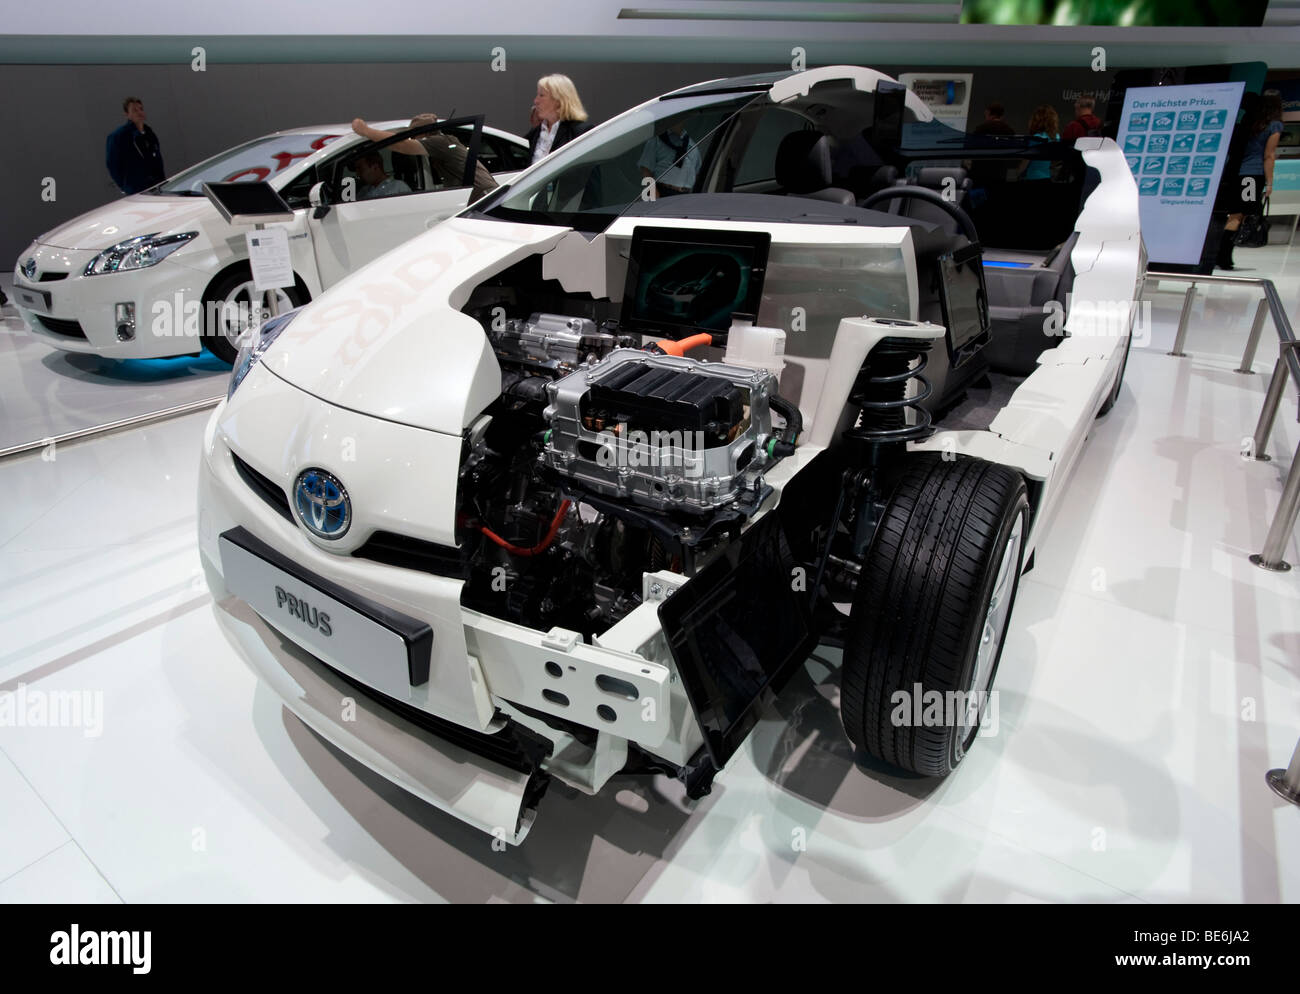 Découper le modèle de la nouvelle Toyota Prius hybride salon de voiture au salon de Francfort 2009 Banque D'Images